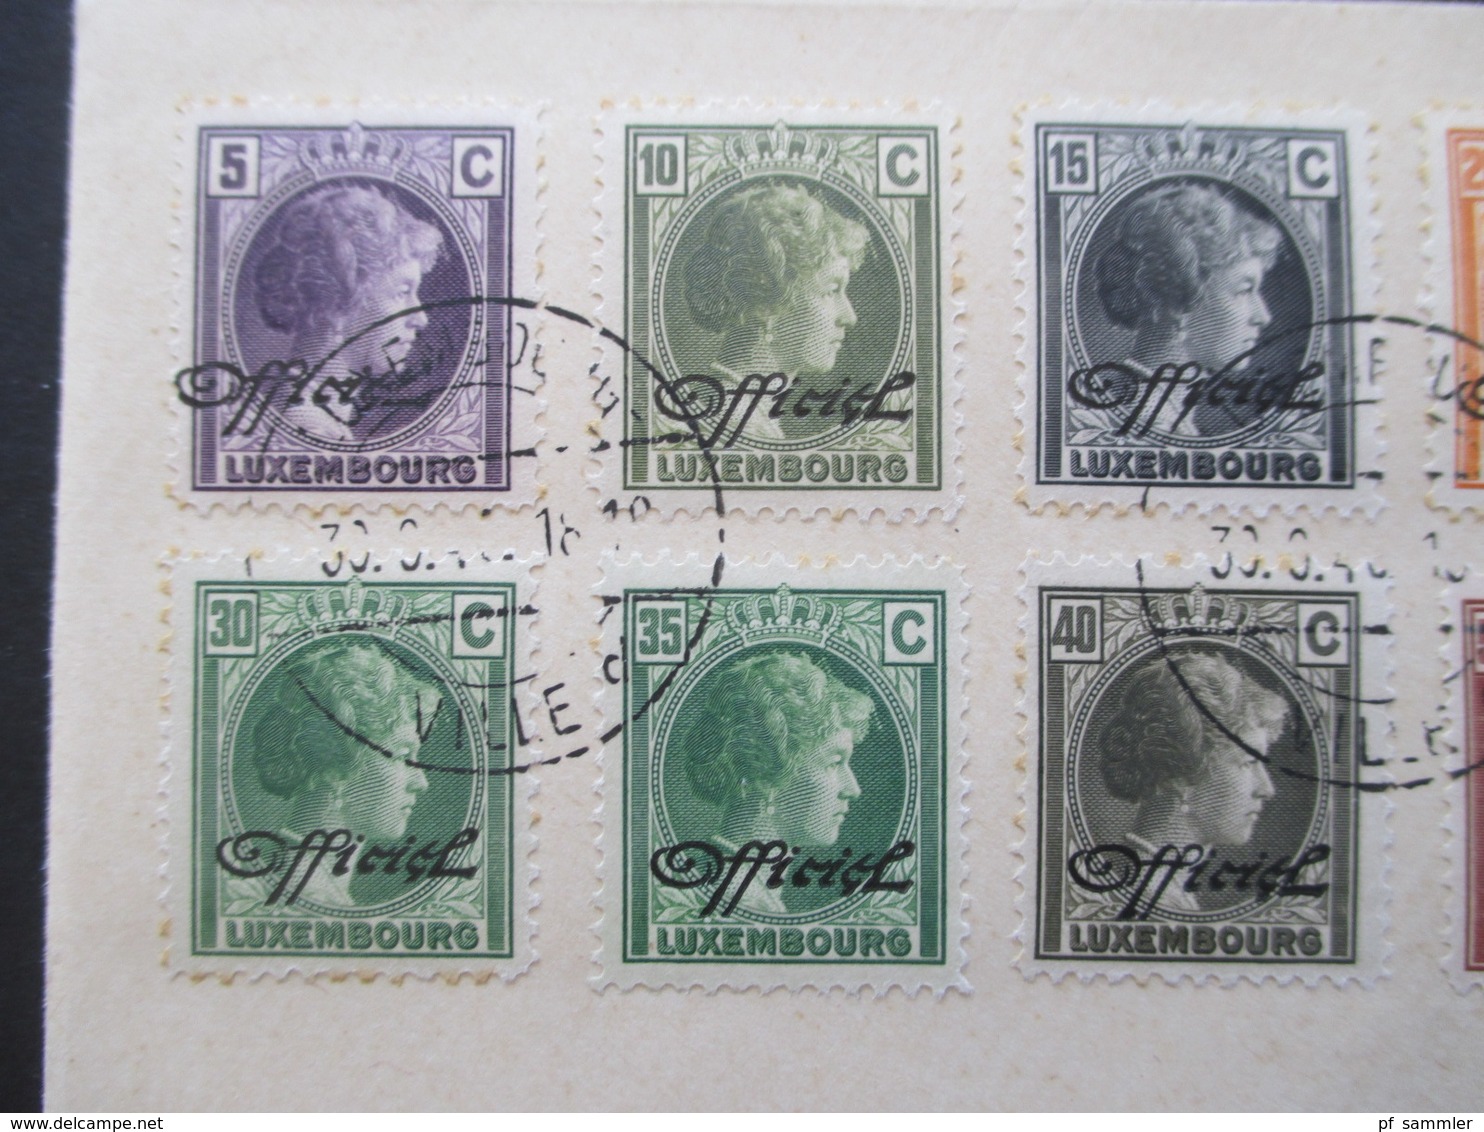 Luxemburg 1940 Dienstmarken Freimarken Mit Aufdruck Officiel 18 Werte Auf 2 Blano Umschlägen 5 Cent - 1 3/4 Fr. - Dienstmarken